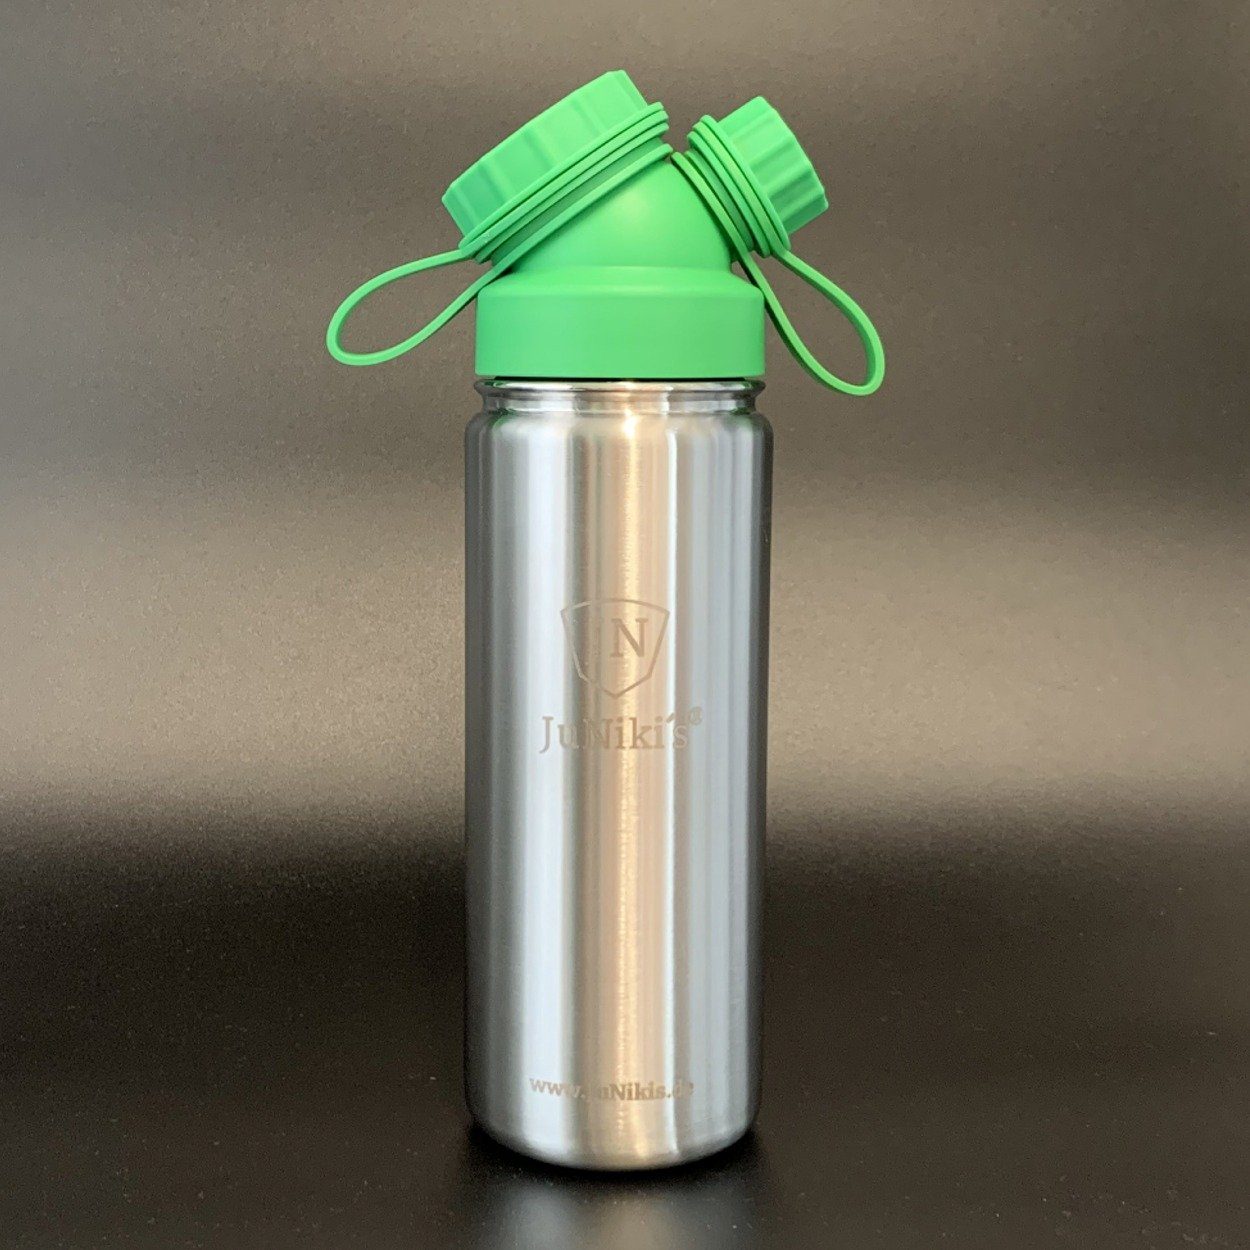 Neck® 2er Deckel pend) mit Edelstahl-Trinkflasche (pat. isolierte blau grün JN Double Set Isolierflasche und JuNiki´s JuNiki´s eco Silikonhüllen auslaufsichere line,